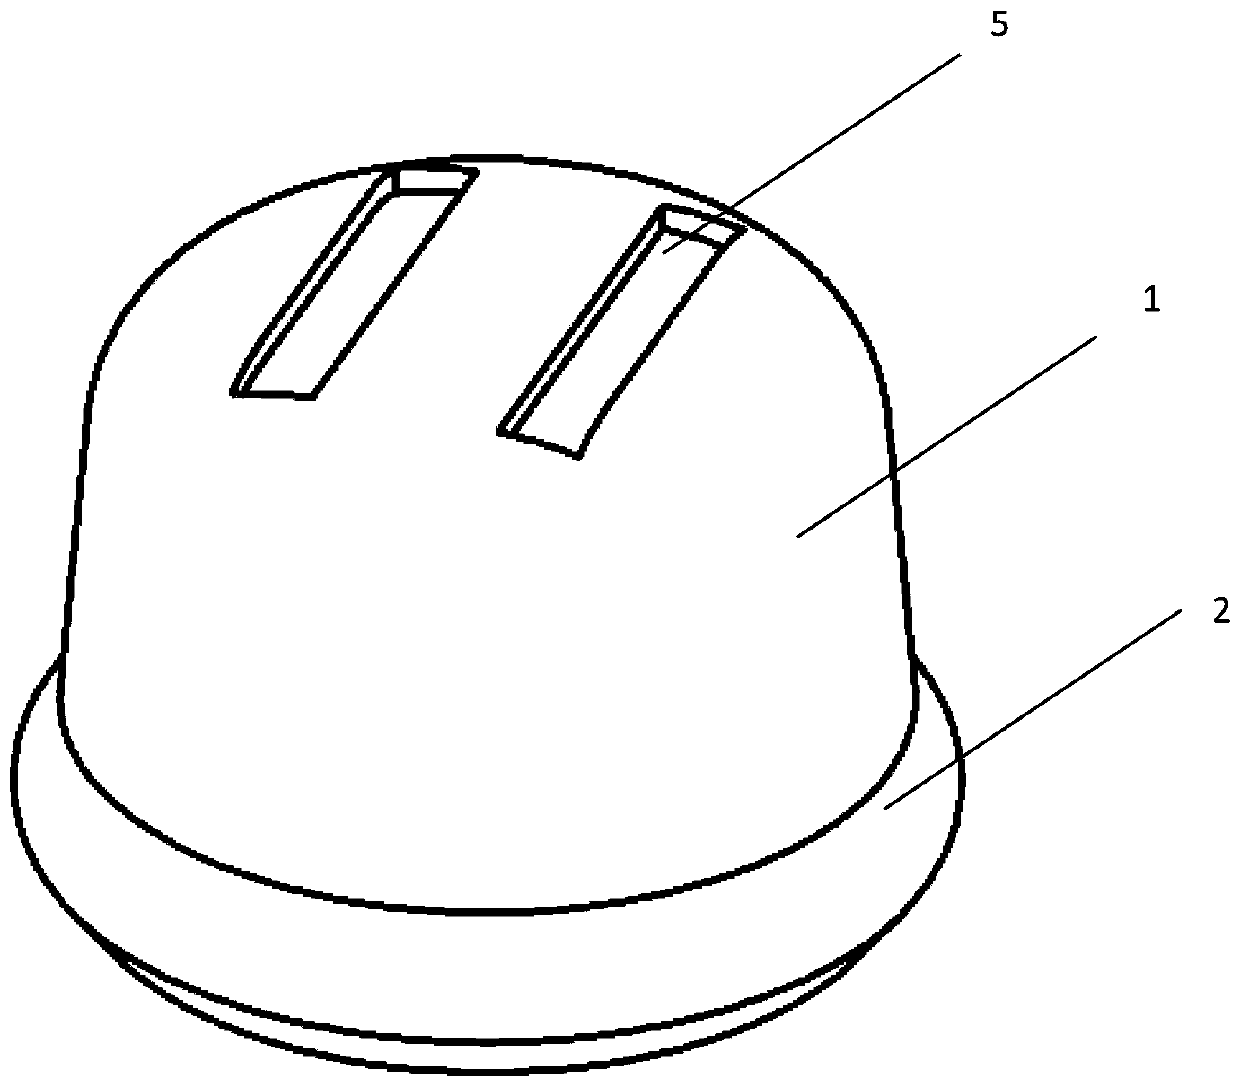 Insulator steel cap and manufacturing method